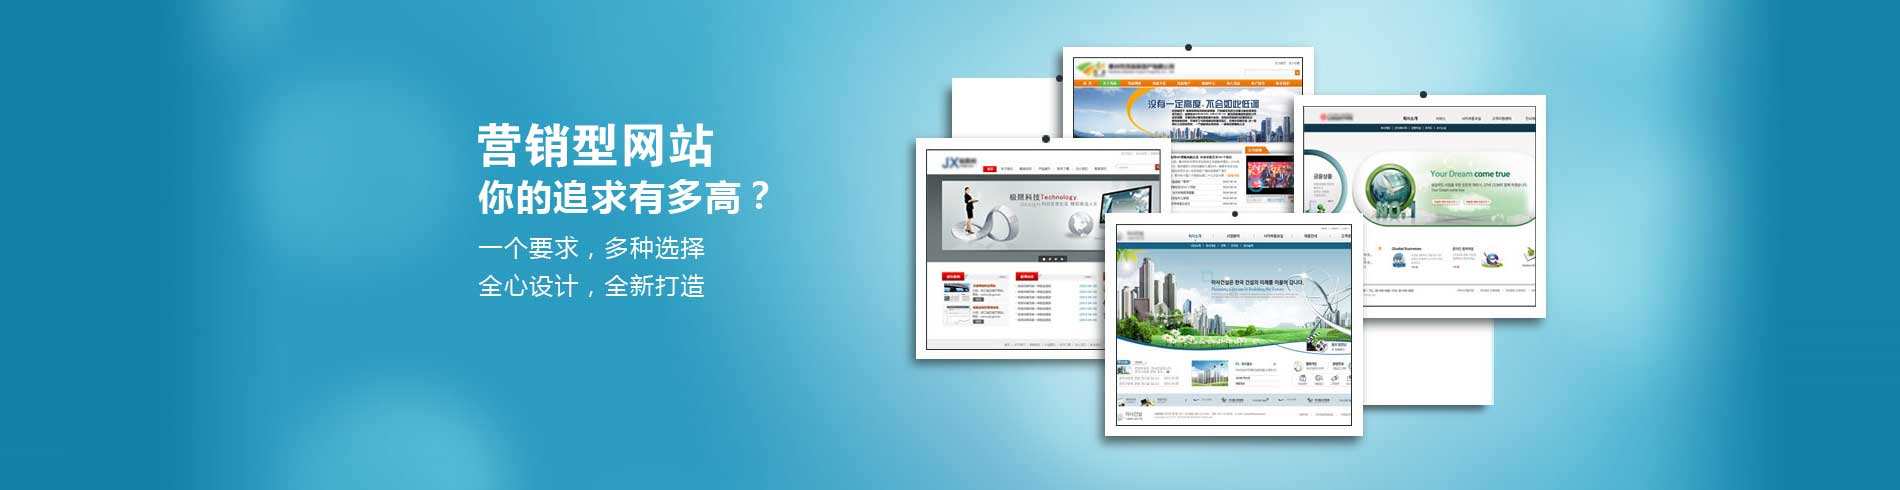 杭州网页设计对产品宣传有用么